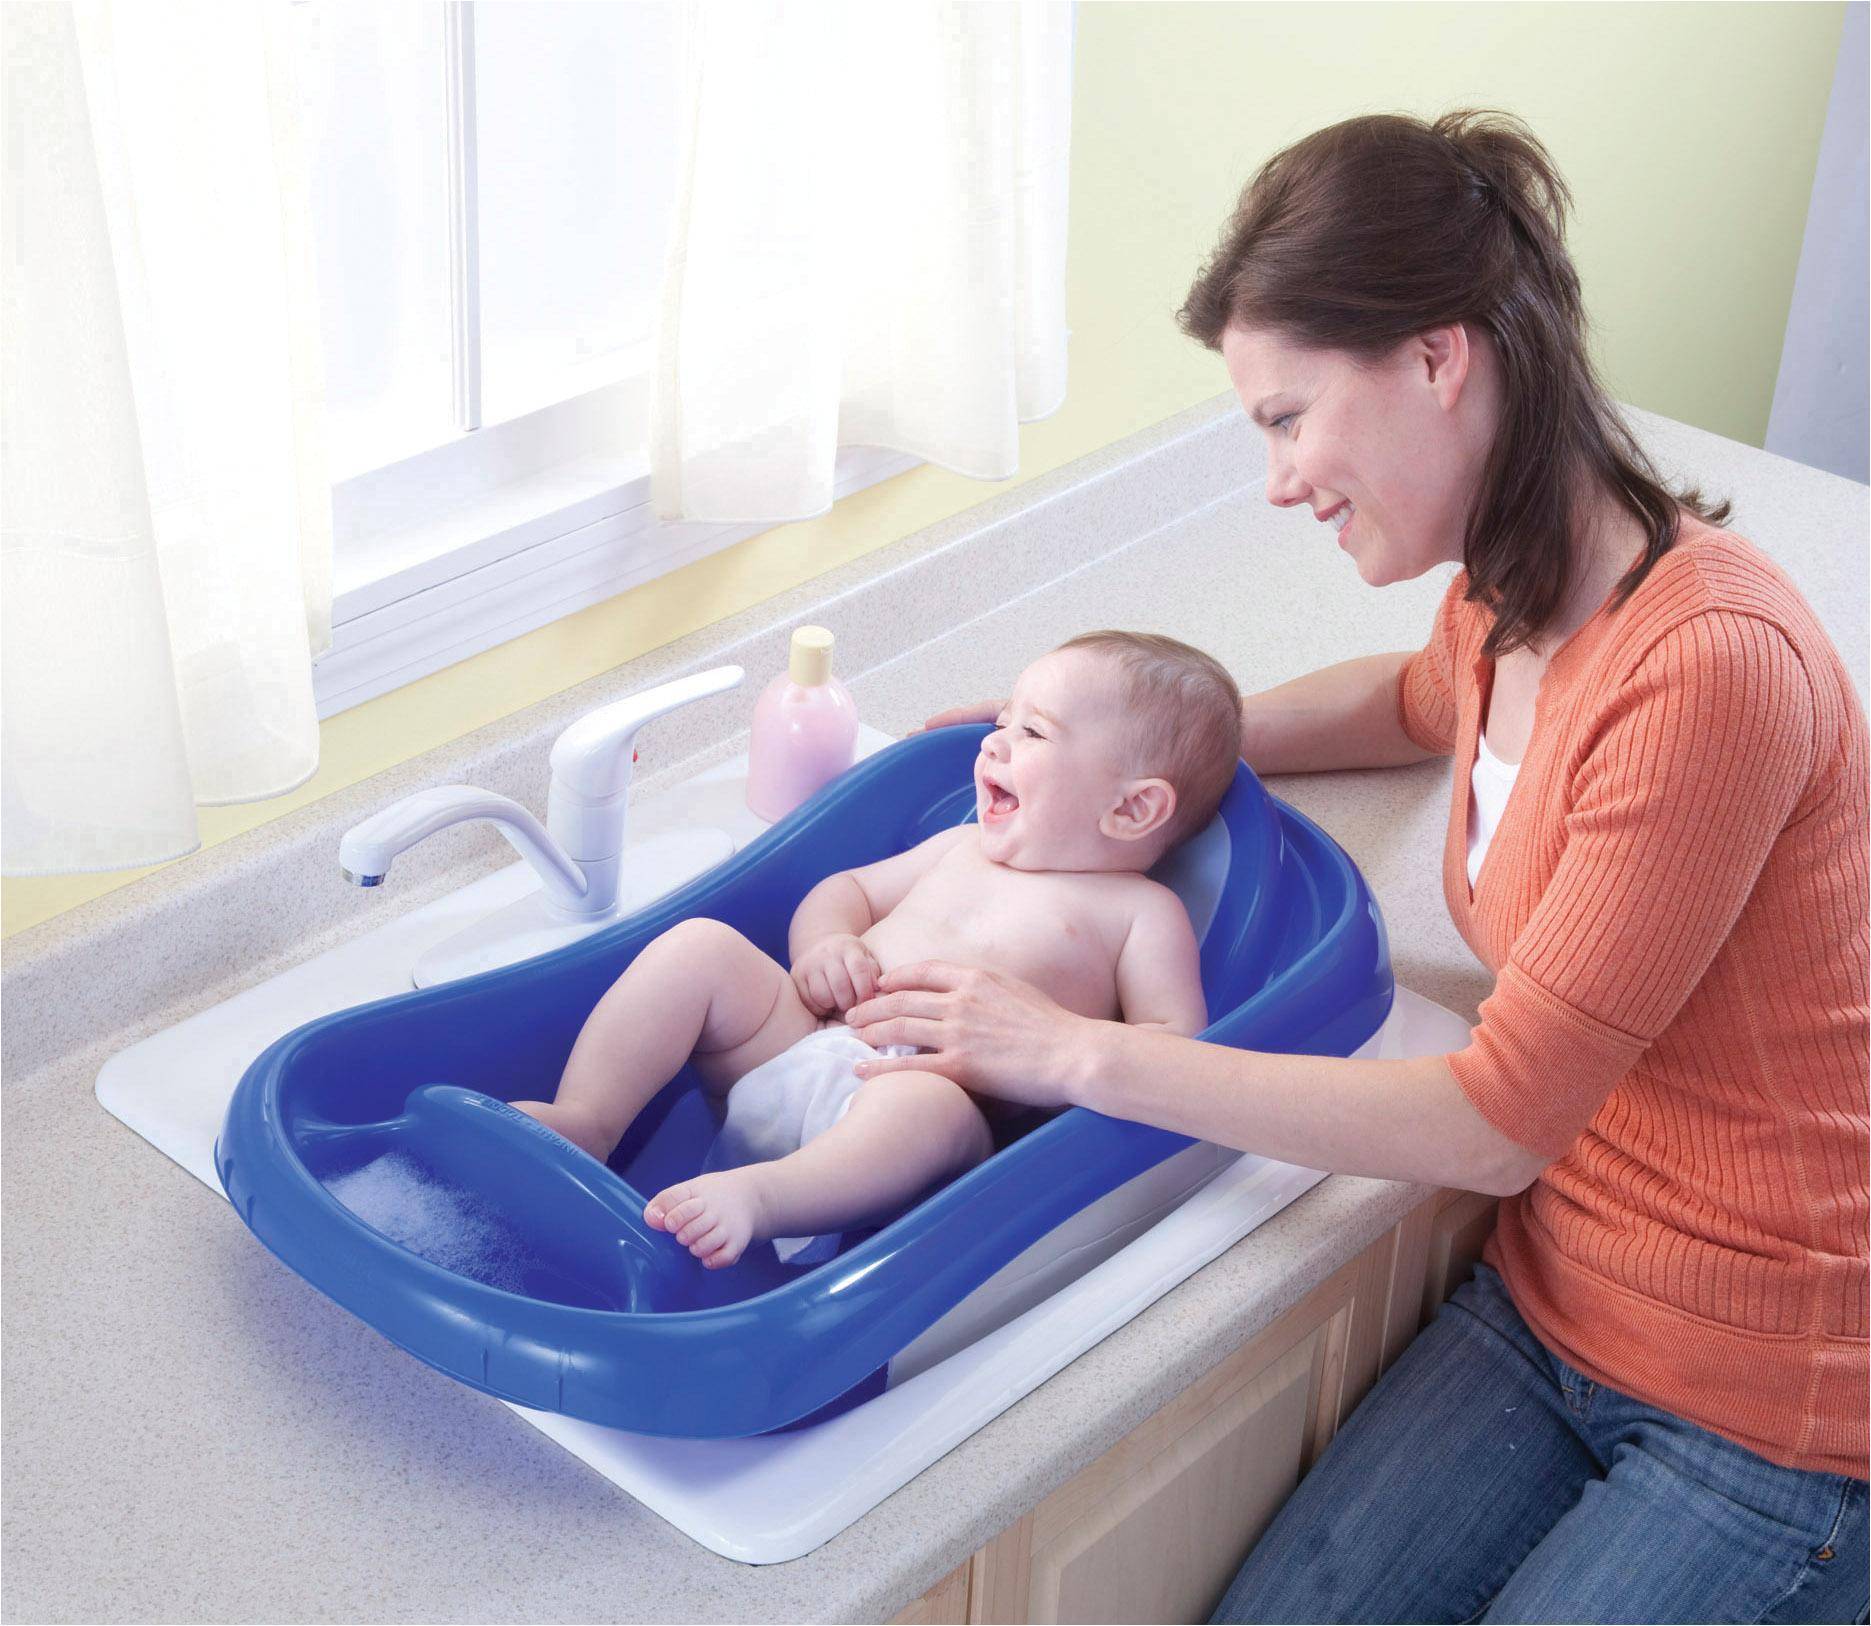 Советы по купанию и уходу за новорожденным ребенком | johnson’s®